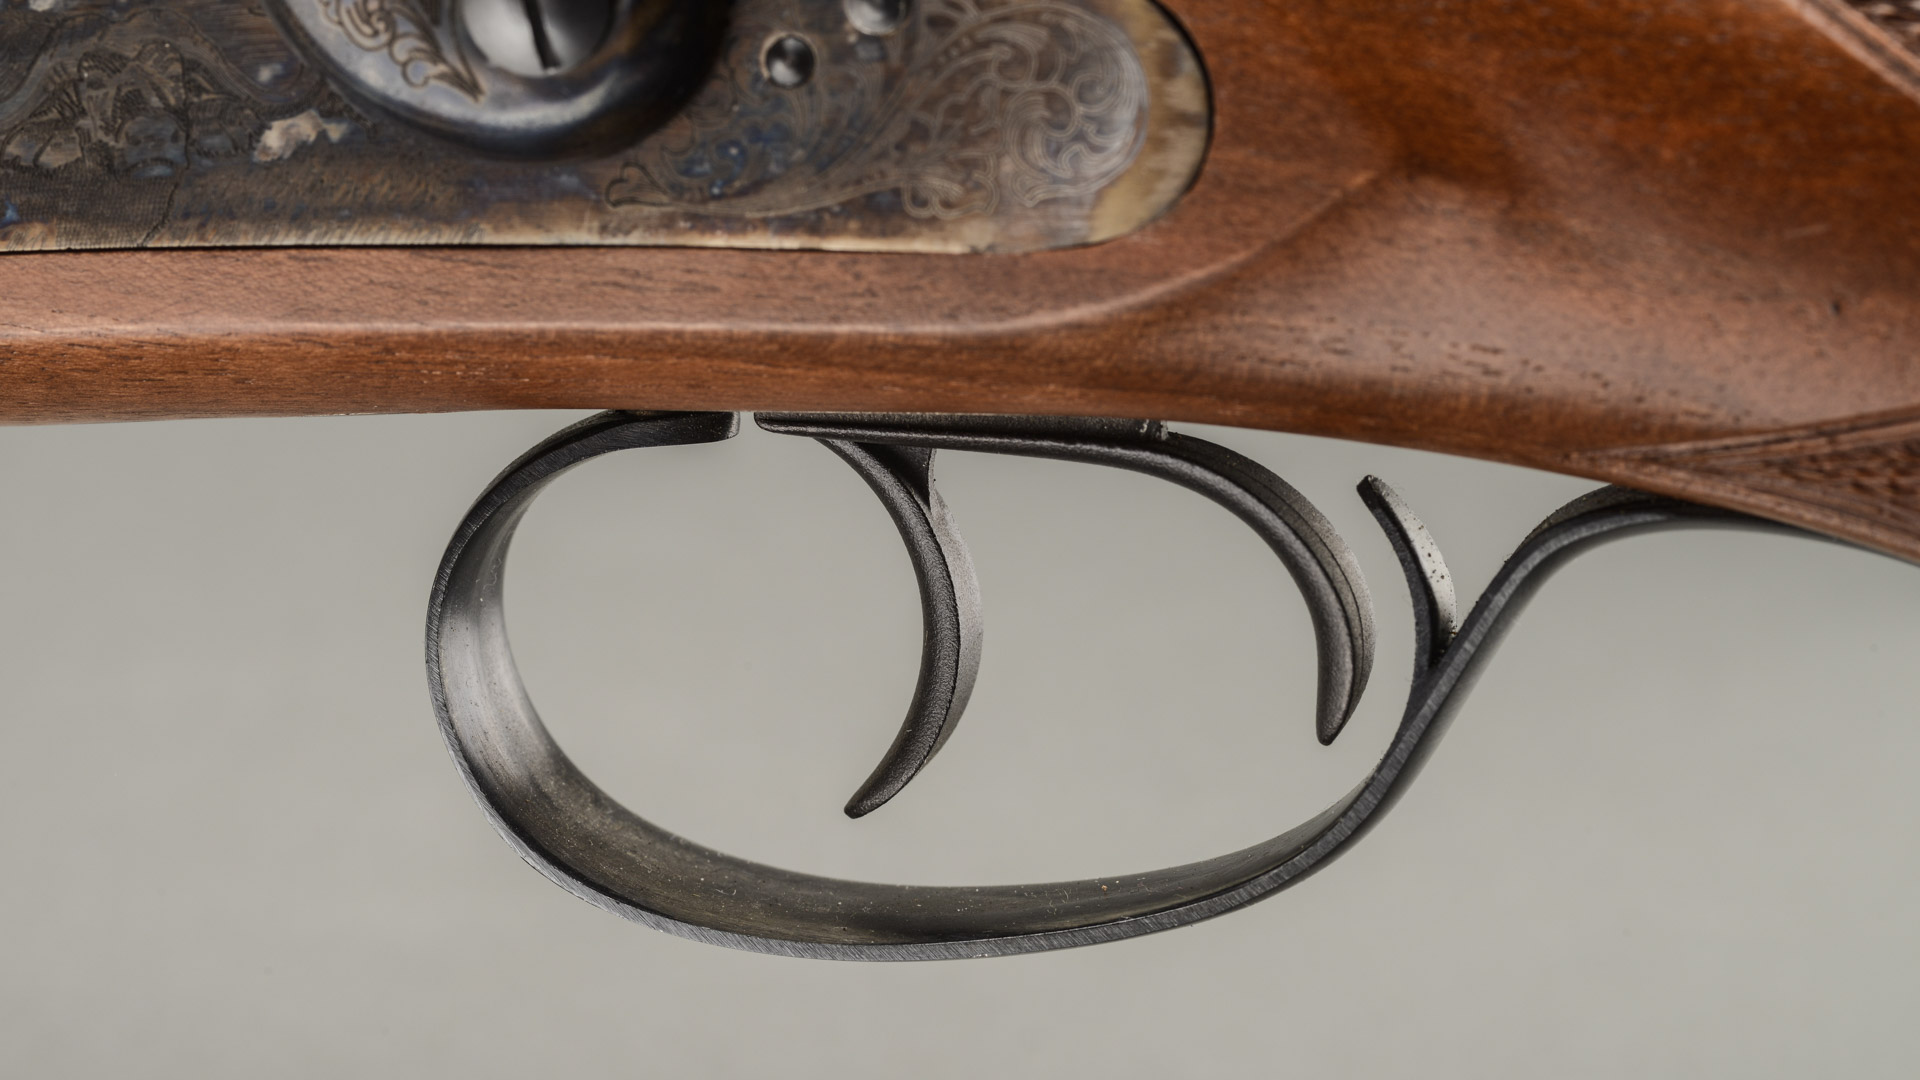 La ridondanza tipica della carabina express si evince anche dalla presenza di un doppio sistema di scatto e da due grilletti